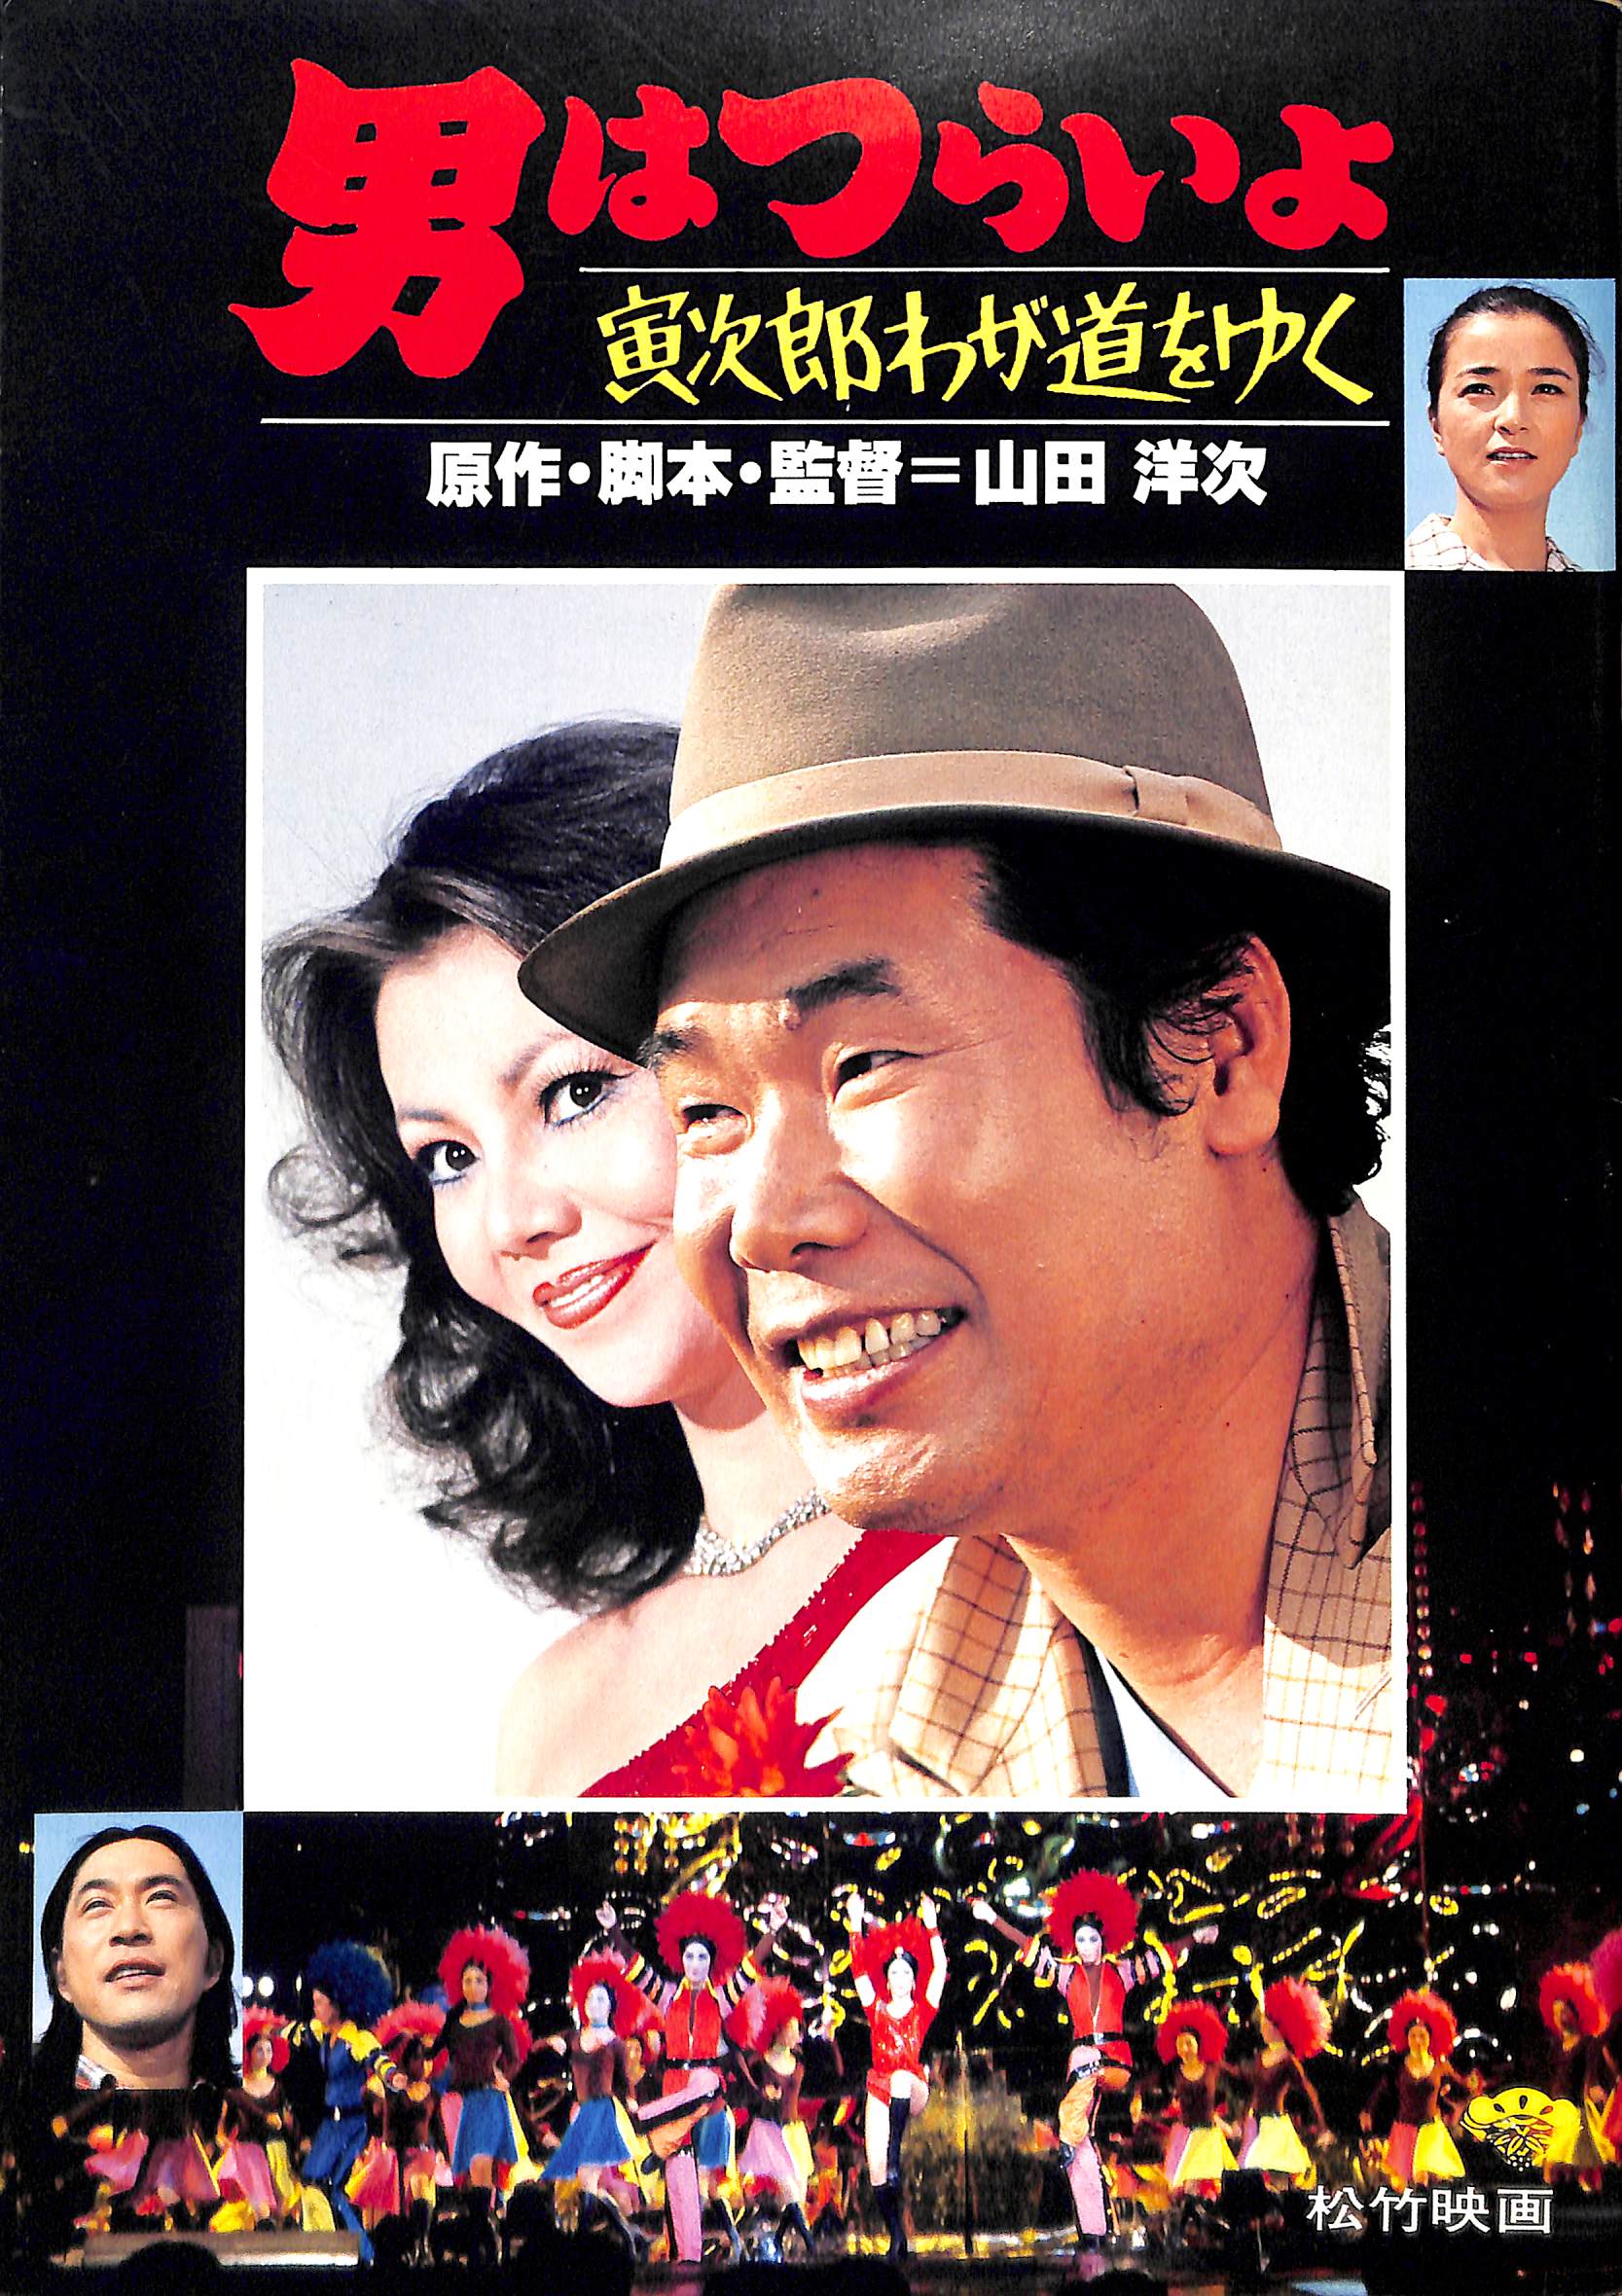 【映画パンフレット】男はつらいよ 寅次郎わが道をゆく (1978年